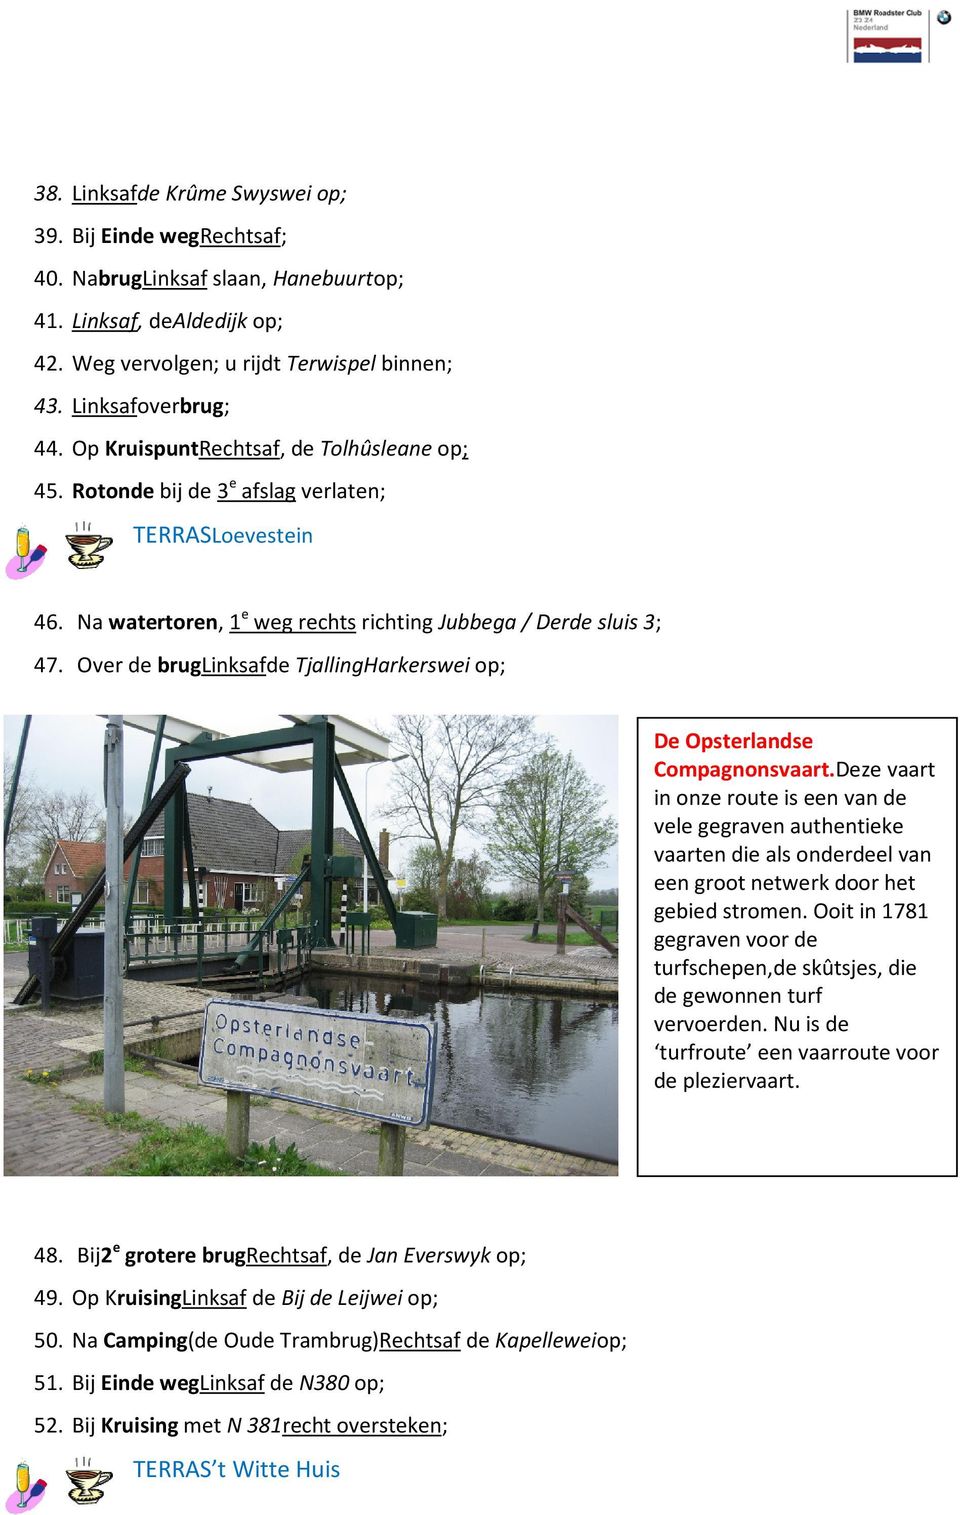 Over de bruglinksafde TjallingHarkerswei op; De Opsterlandse Compagnonsvaart.